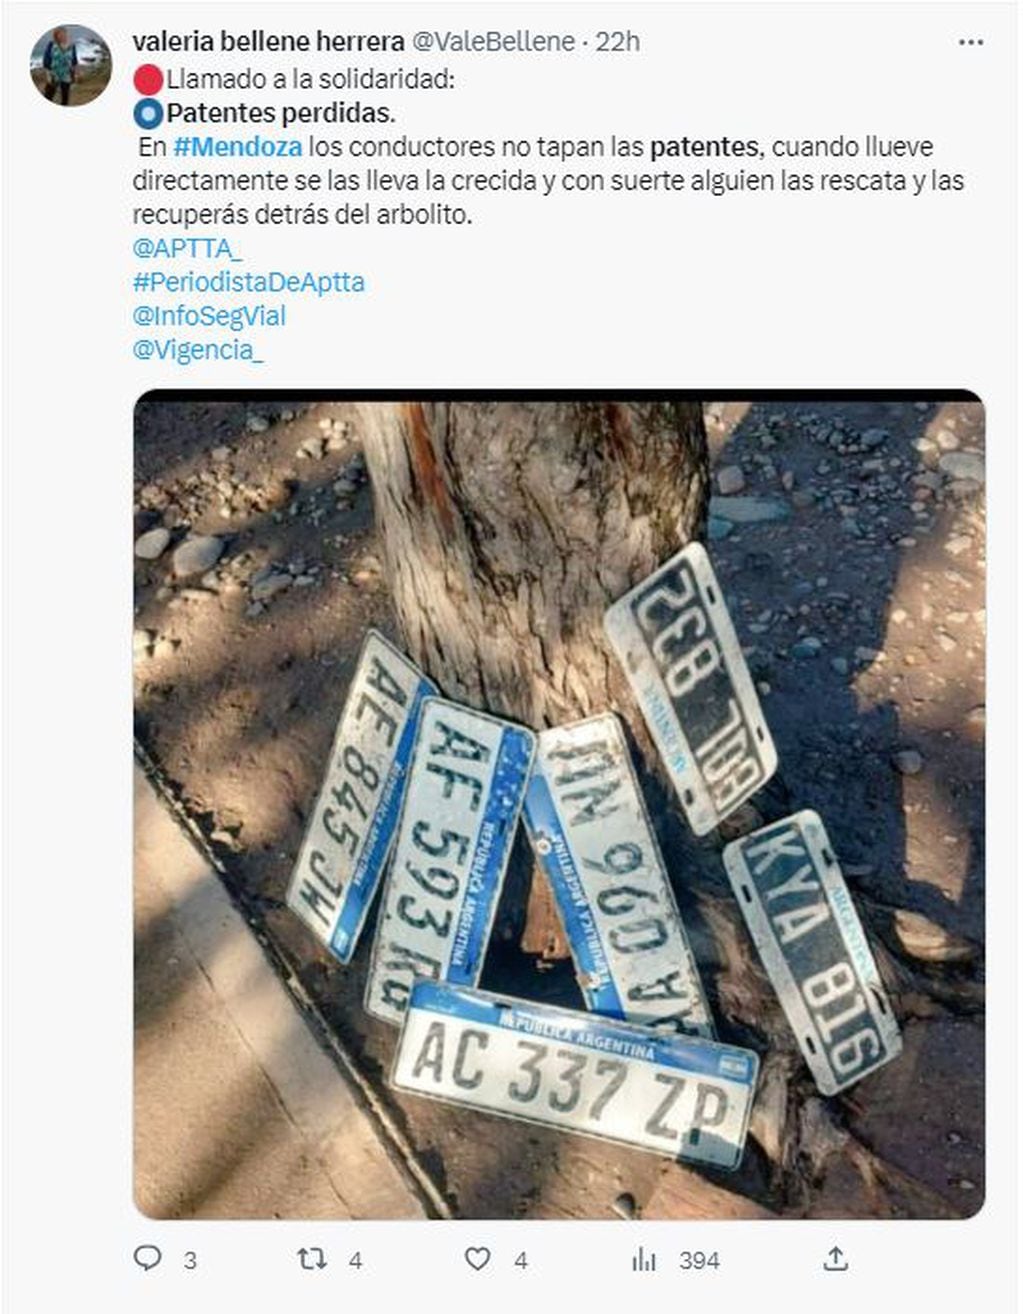 Patentes perdidas por la lluvia e inundaciones en Mendoza.